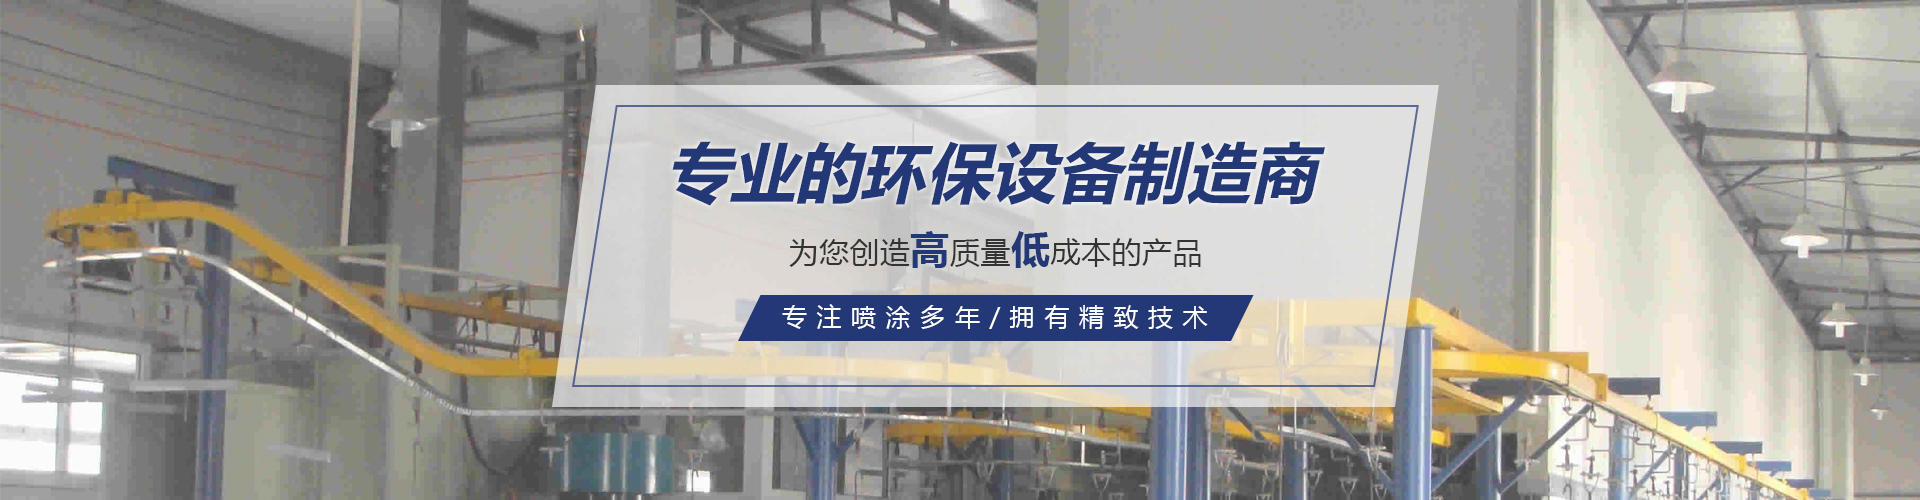 河南电动车喷漆生产商_优质环保设备加工生产厂家-河南众力涂装设备有限公司